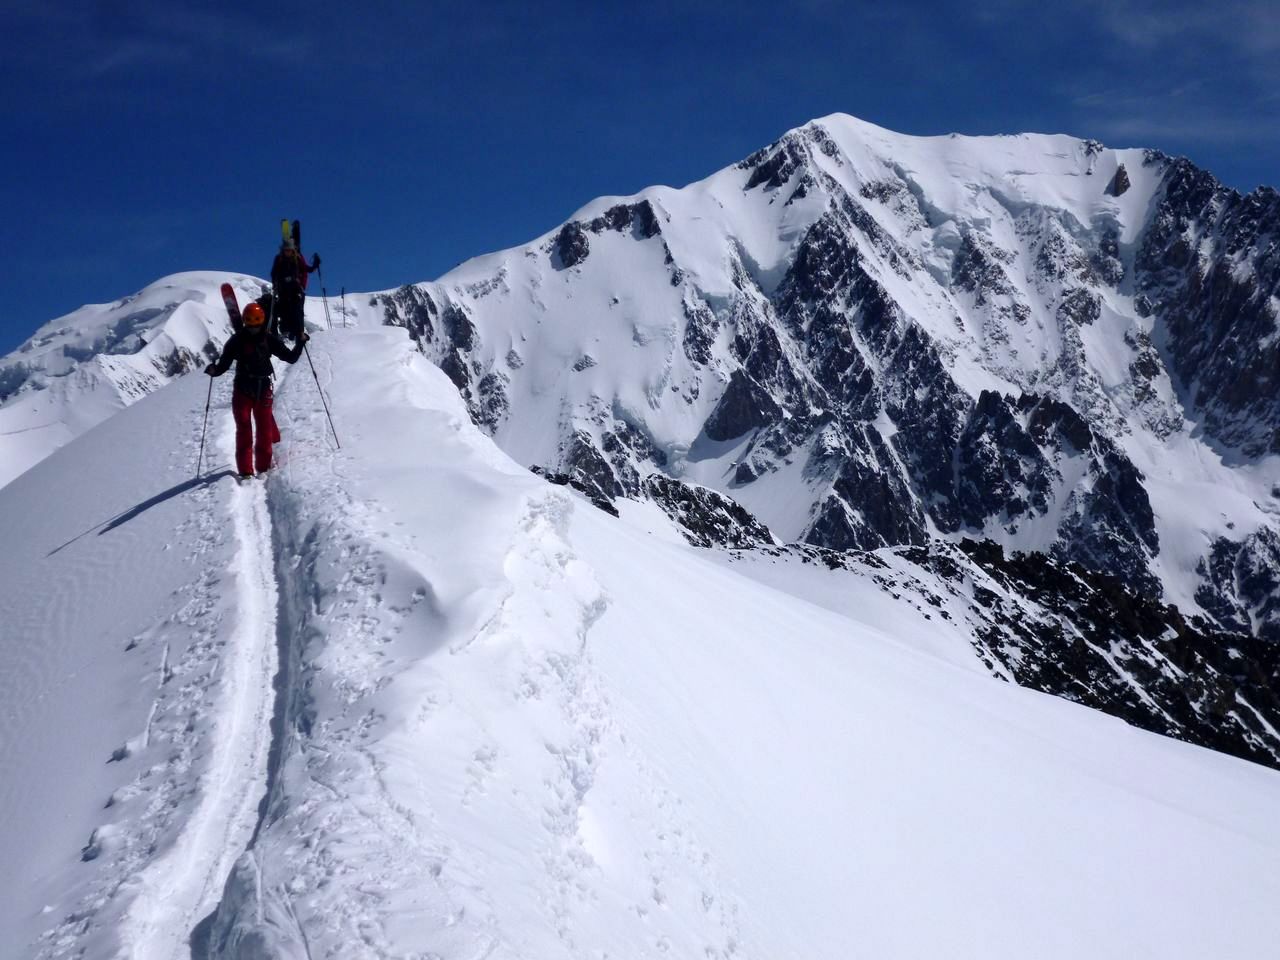 traversée : la traversée peut se faire intégralement en ski.